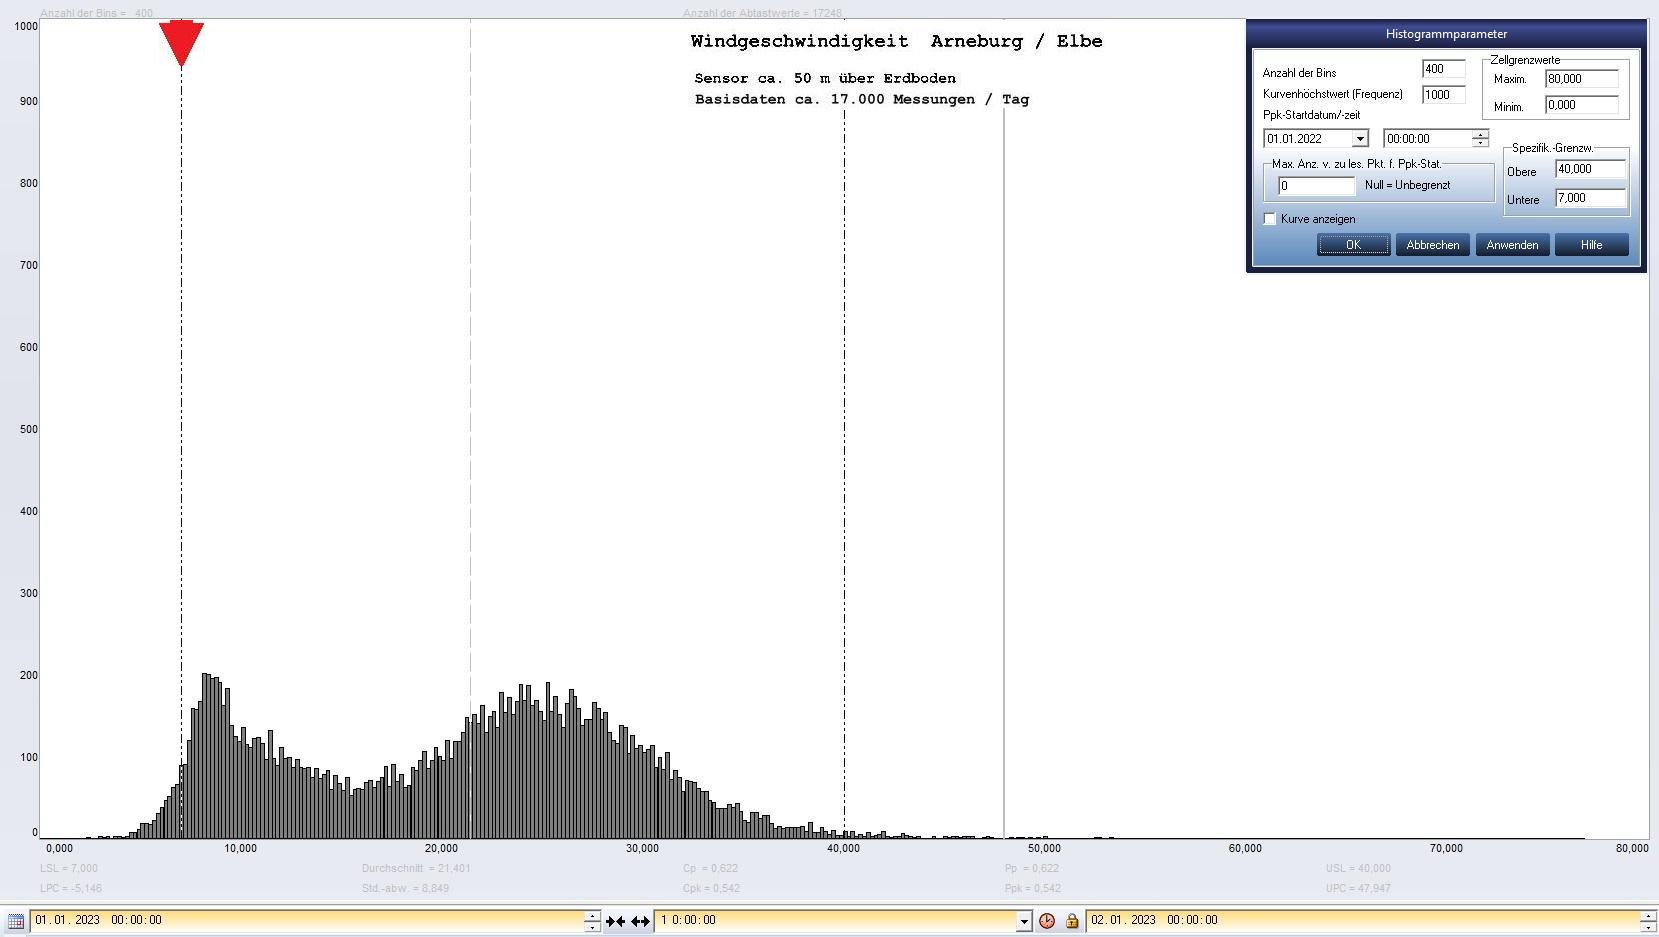 Arneburg Tages-Histogramm Winddaten, 01.01.2023
  Histogramm, Sensor auf Gebude, ca. 50 m ber Erdboden, Basis: 5s-Aufzeichnung